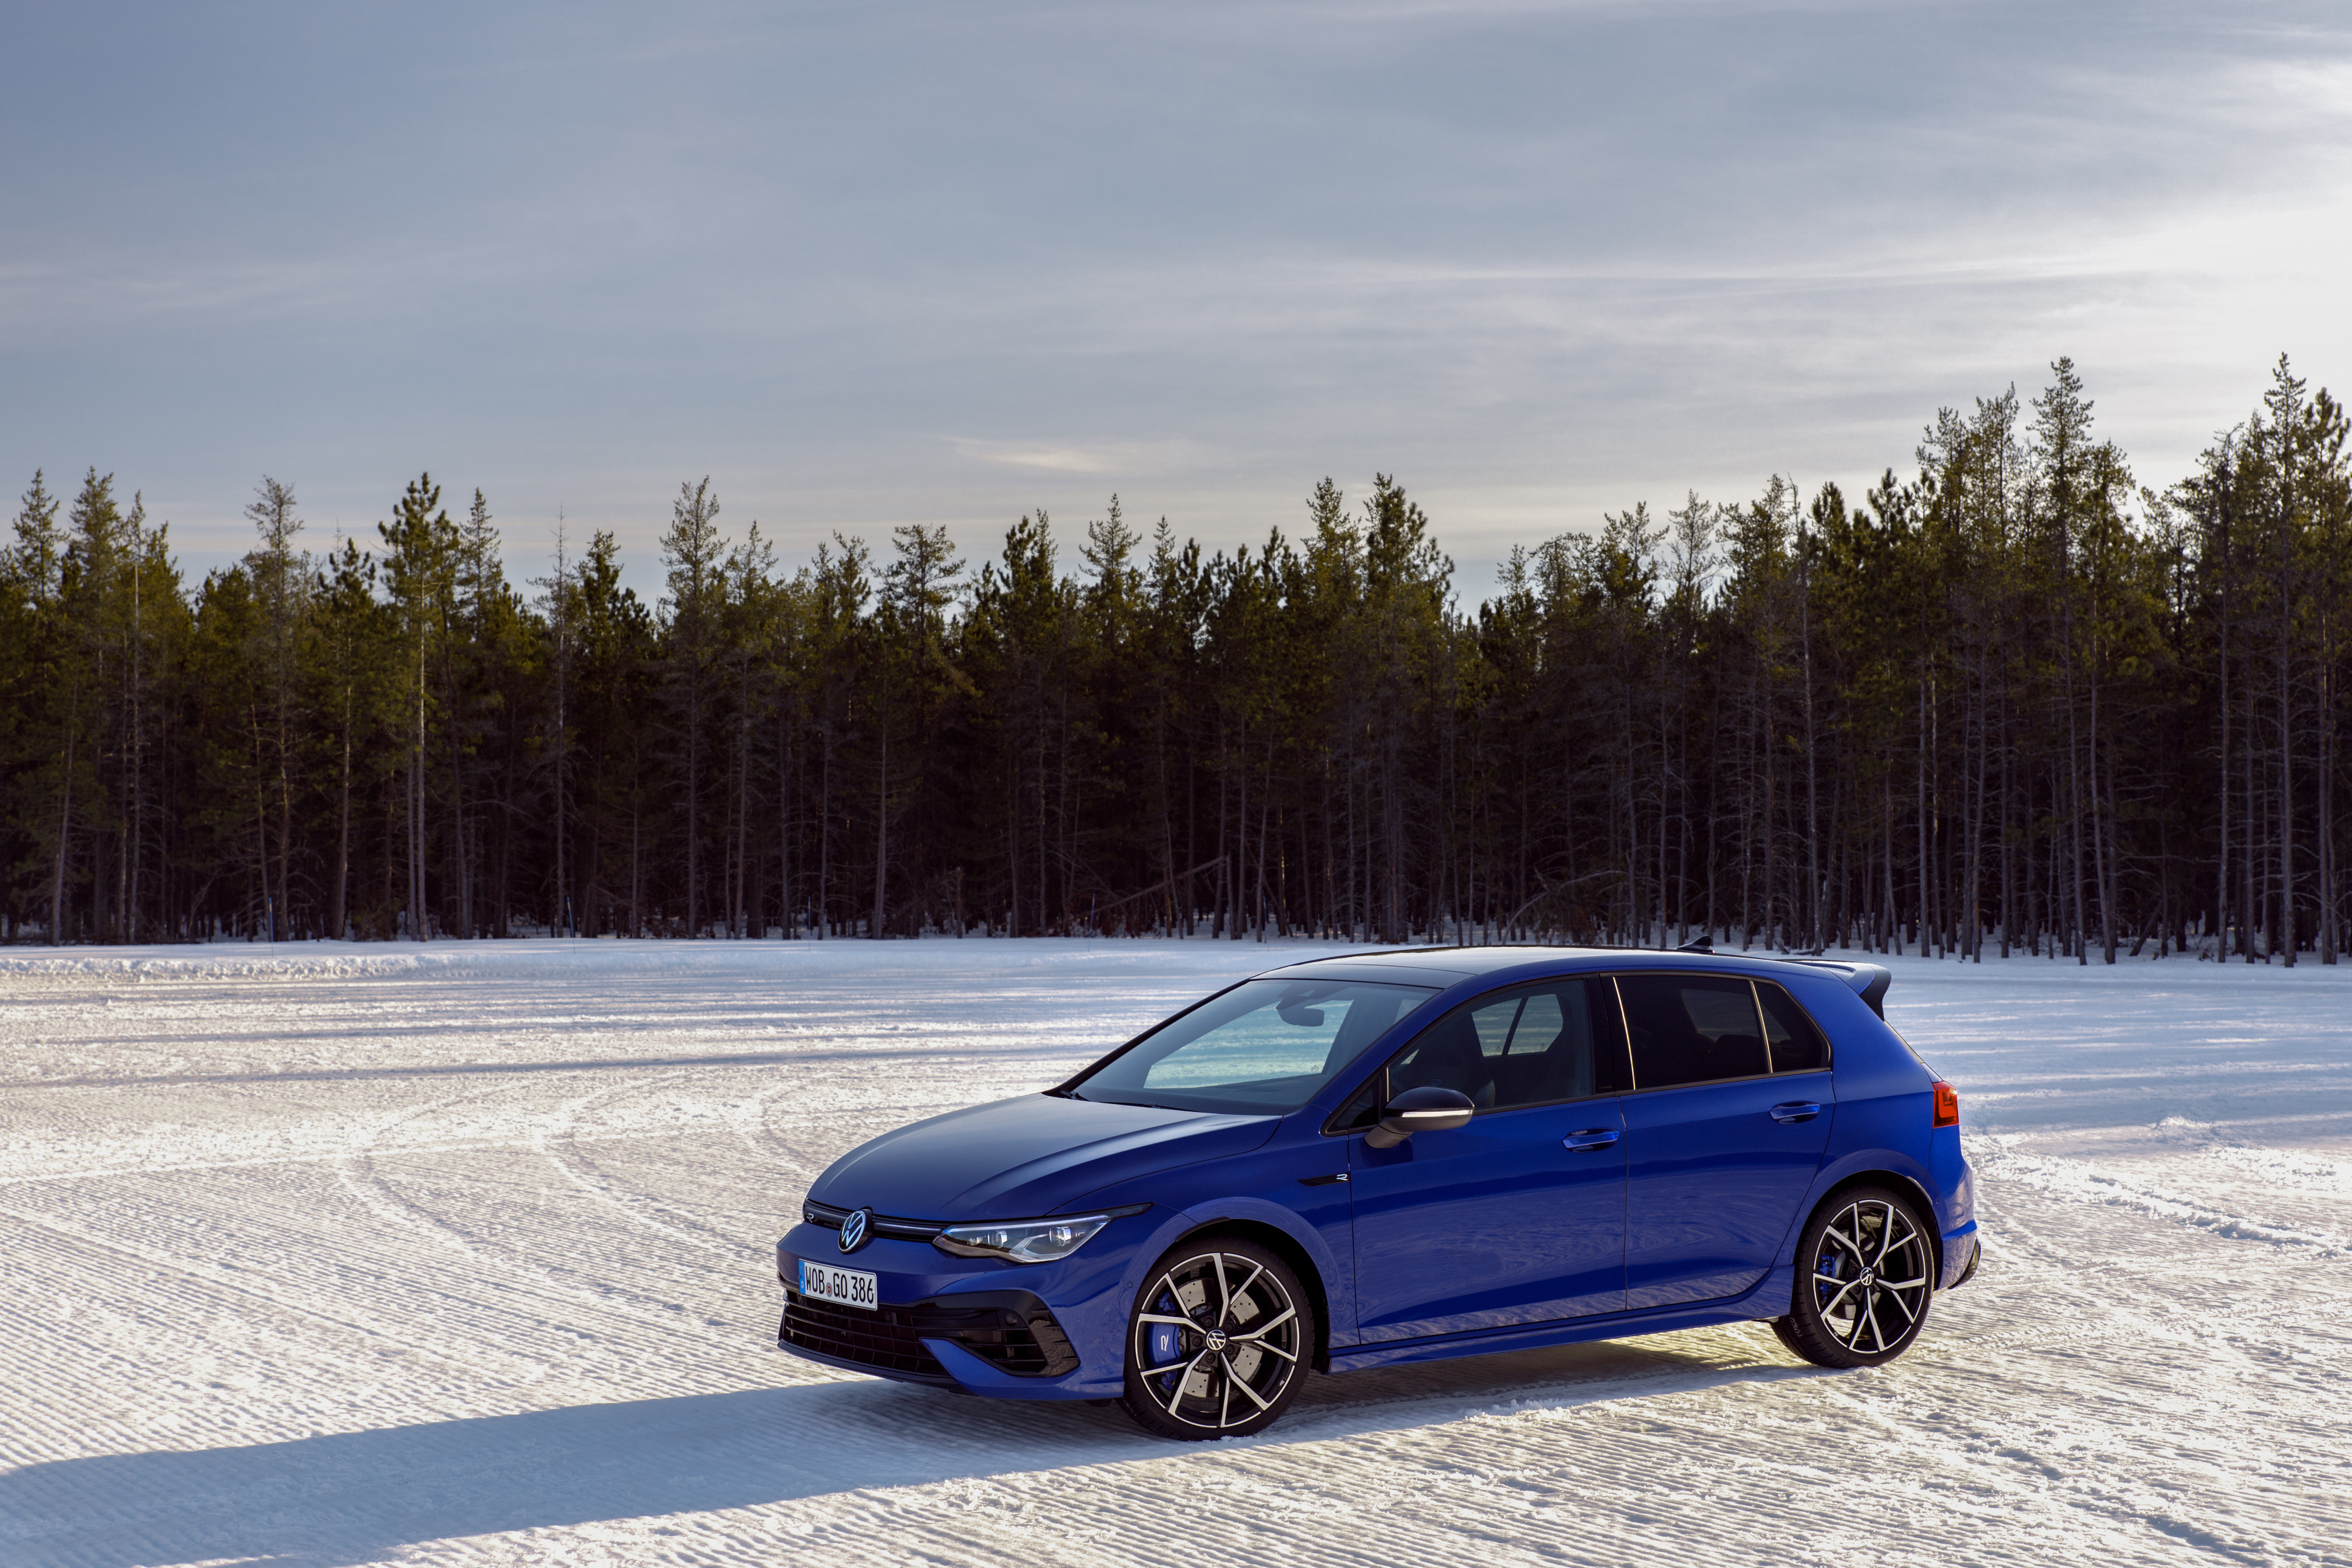 Картинка Volkswagen Универсал Golf R, Worldwide, 2020 синие Снег Металлик Автомобили 4500x3000 Фольксваген синяя Синий синих снега снегу снеге авто машины машина автомобиль